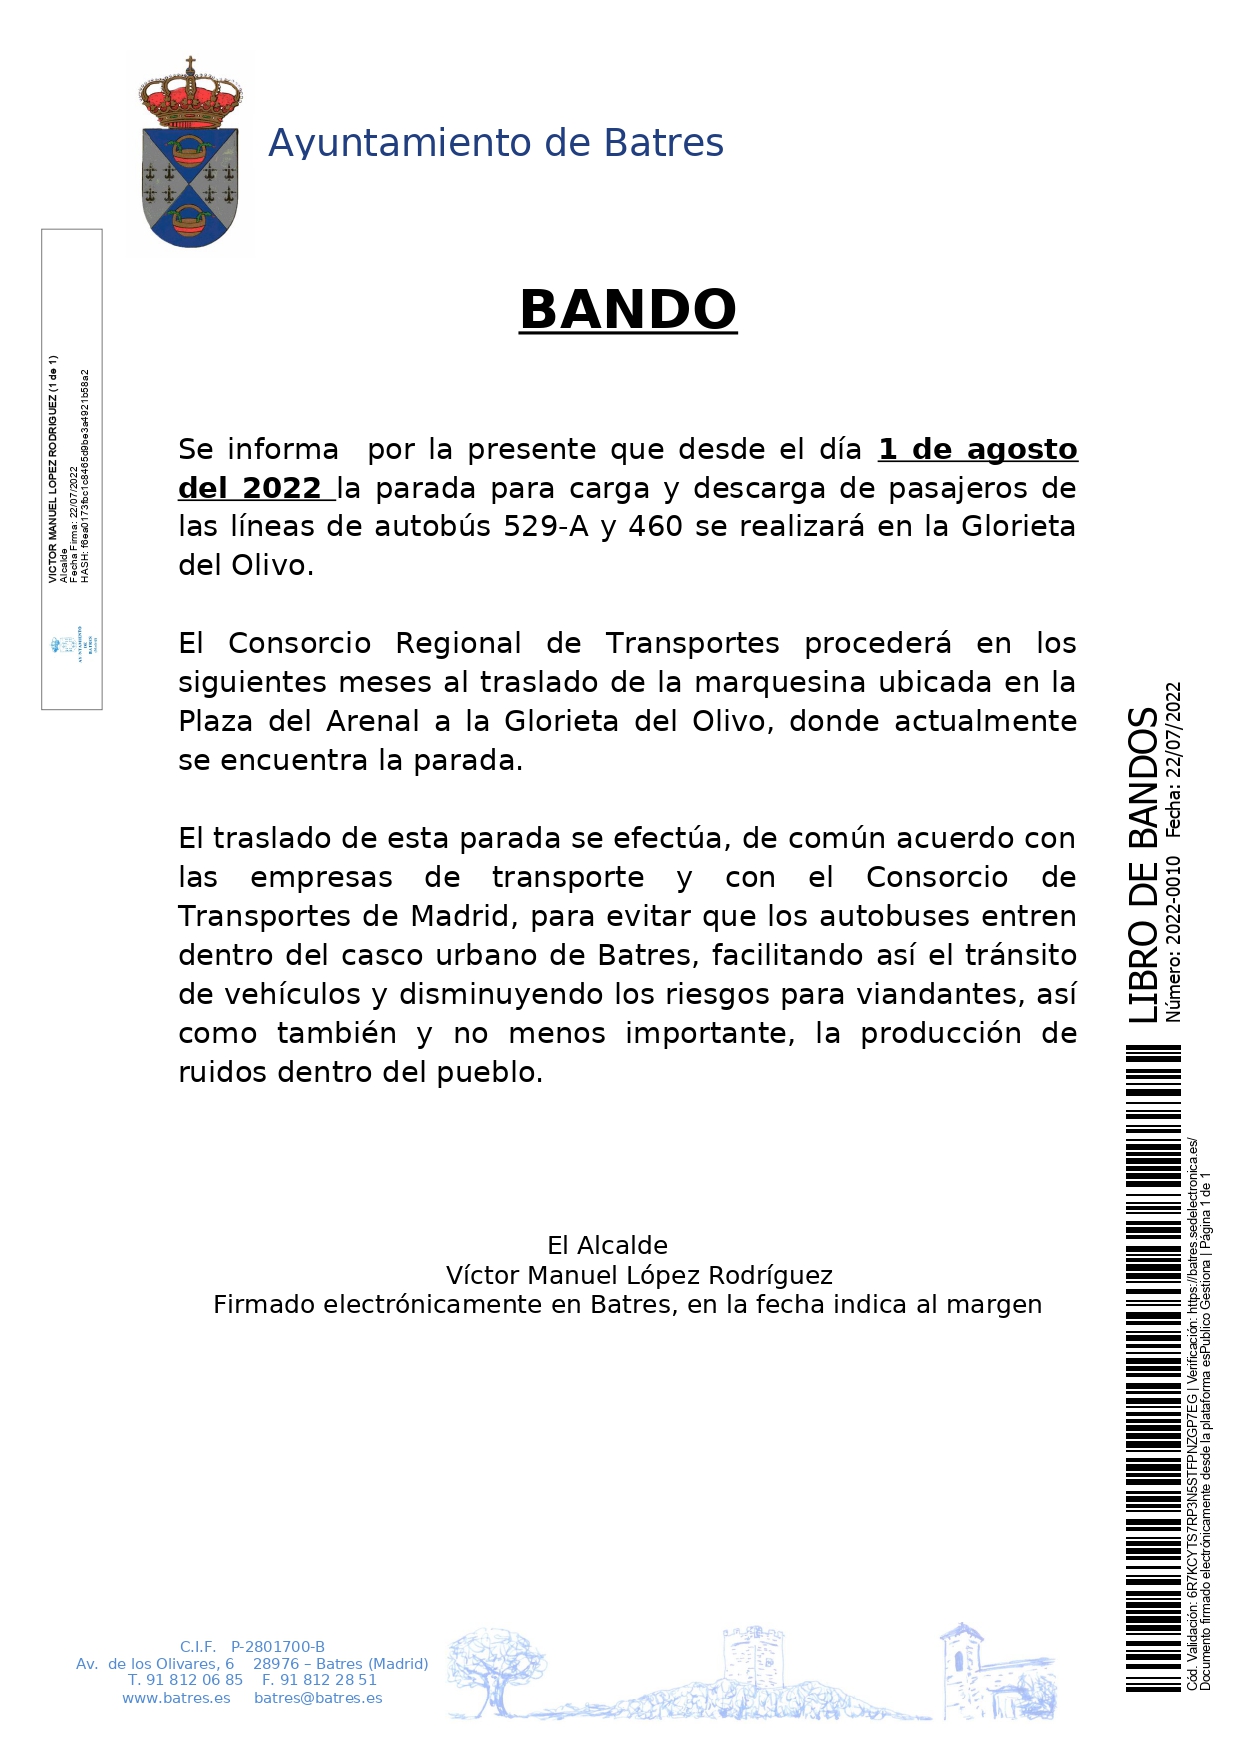 20220722 Otros LIBRO DE BANDOS 2022 0010 CAMBIO DE PARADA DE AUTOBUSES 1 AGOSTO 2022 page 0001